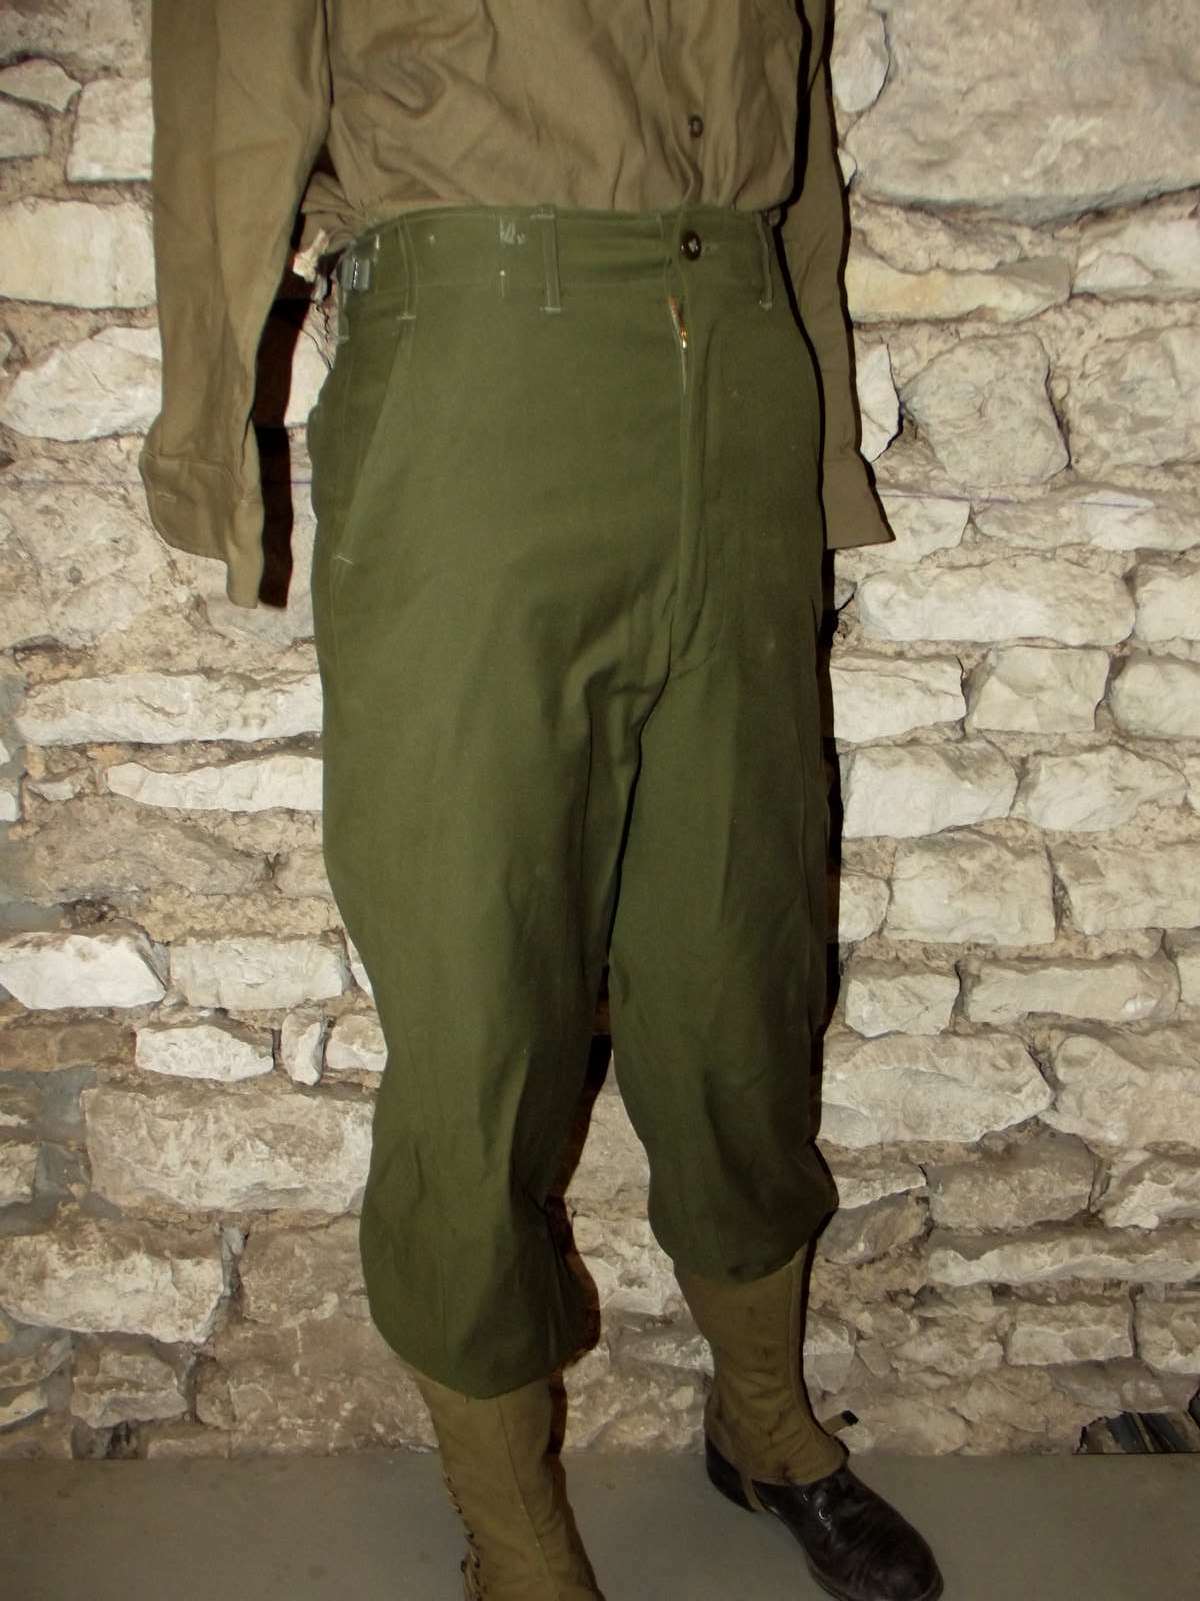 Pantalon laine US OG-108 Réenactors ww2 Guerre de Corée. Taille 38 Europe.